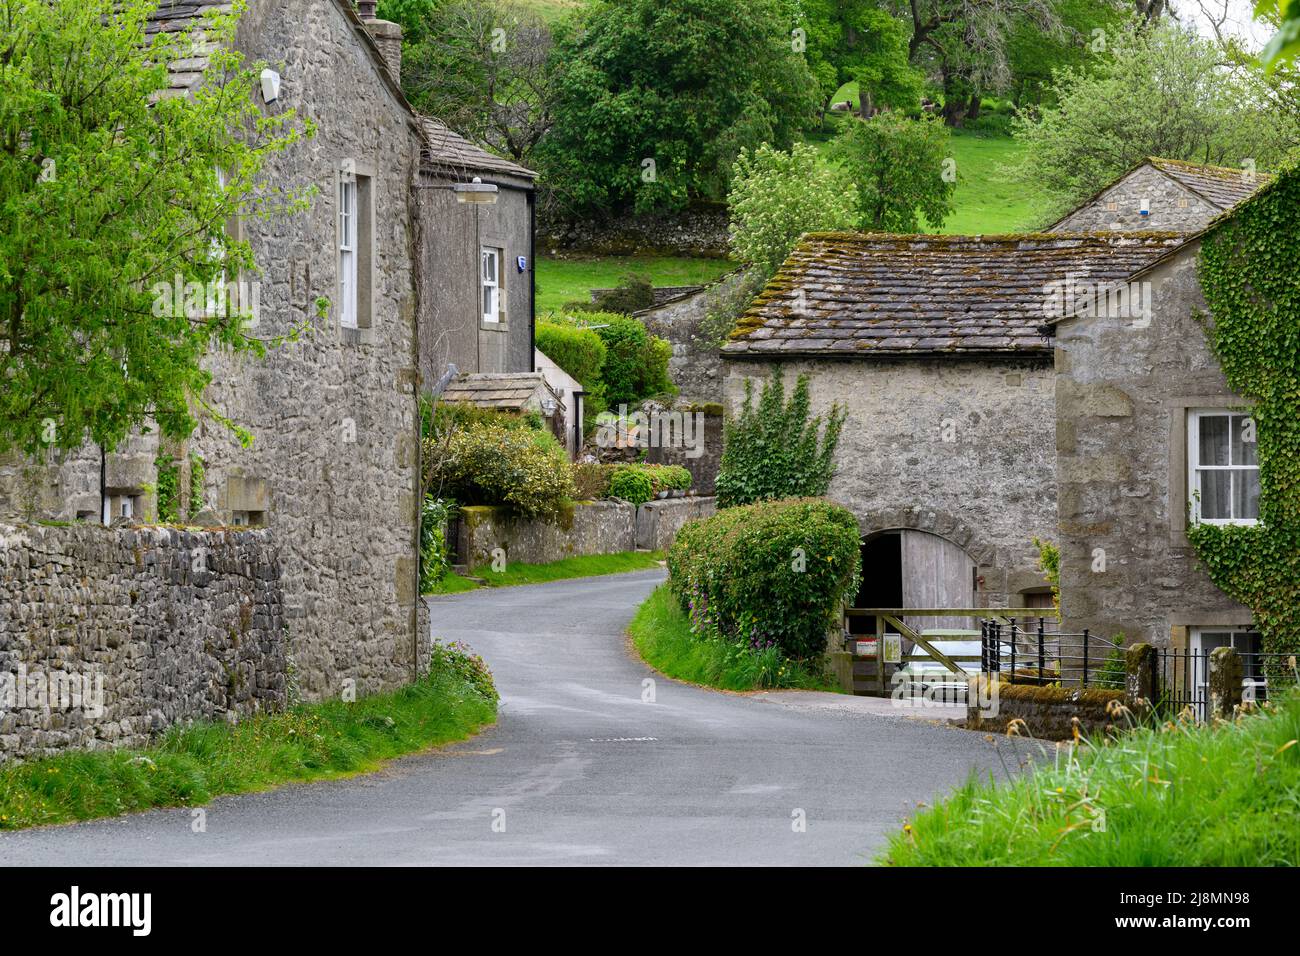 Tranquilo pueblo Conistone (atractivos edificios de piedra, campos verdes en la ladera empinada del valle, carretera serpenteante) - Wharfedale, Yorkshire Dales, Inglaterra, Reino Unido. Foto de stock